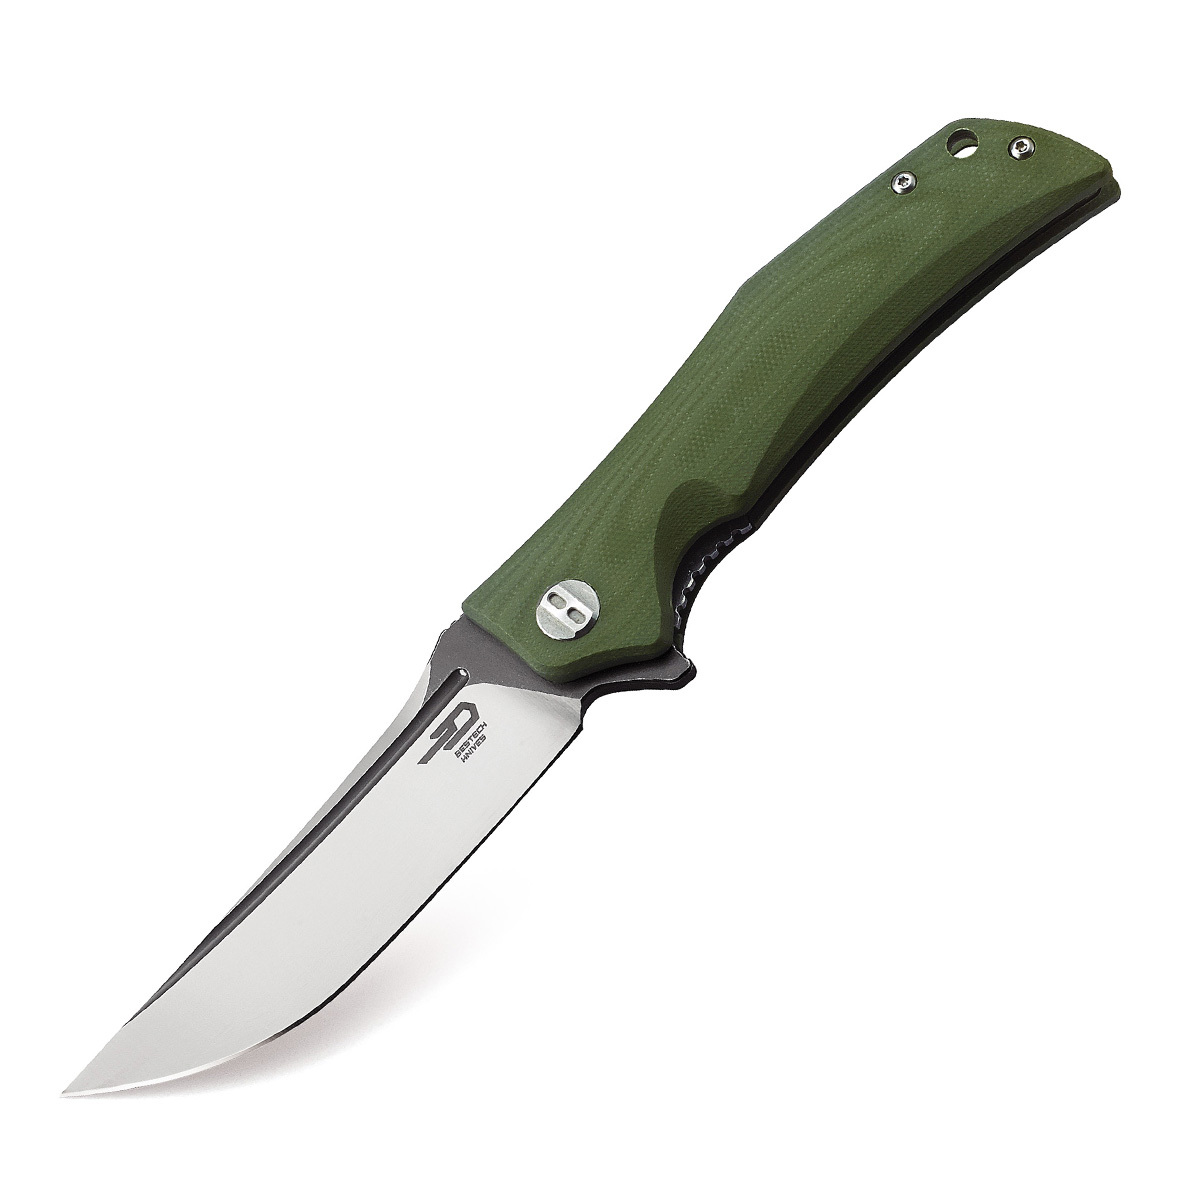 Складной нож Bestech Scimitar, сталь D2, рукоять G10, зеленый складной нож bestech swift сталь d2 micarta